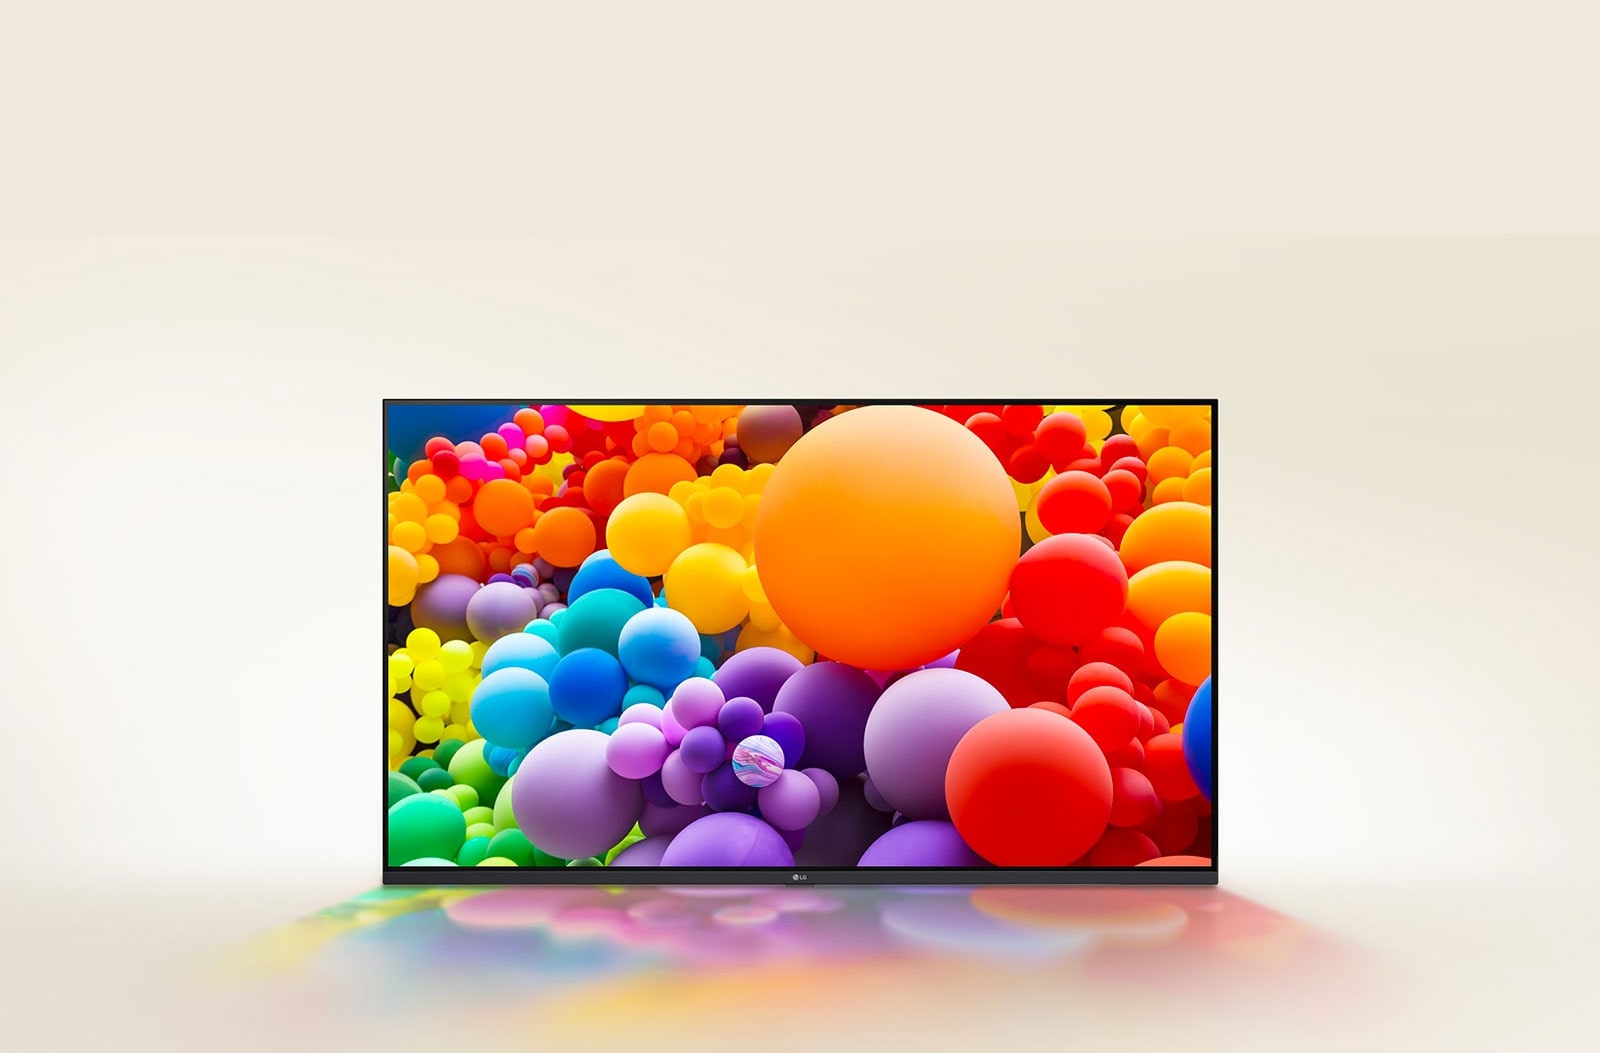 Muchos globos con diferentes colores se muestran en LG UHD TV.